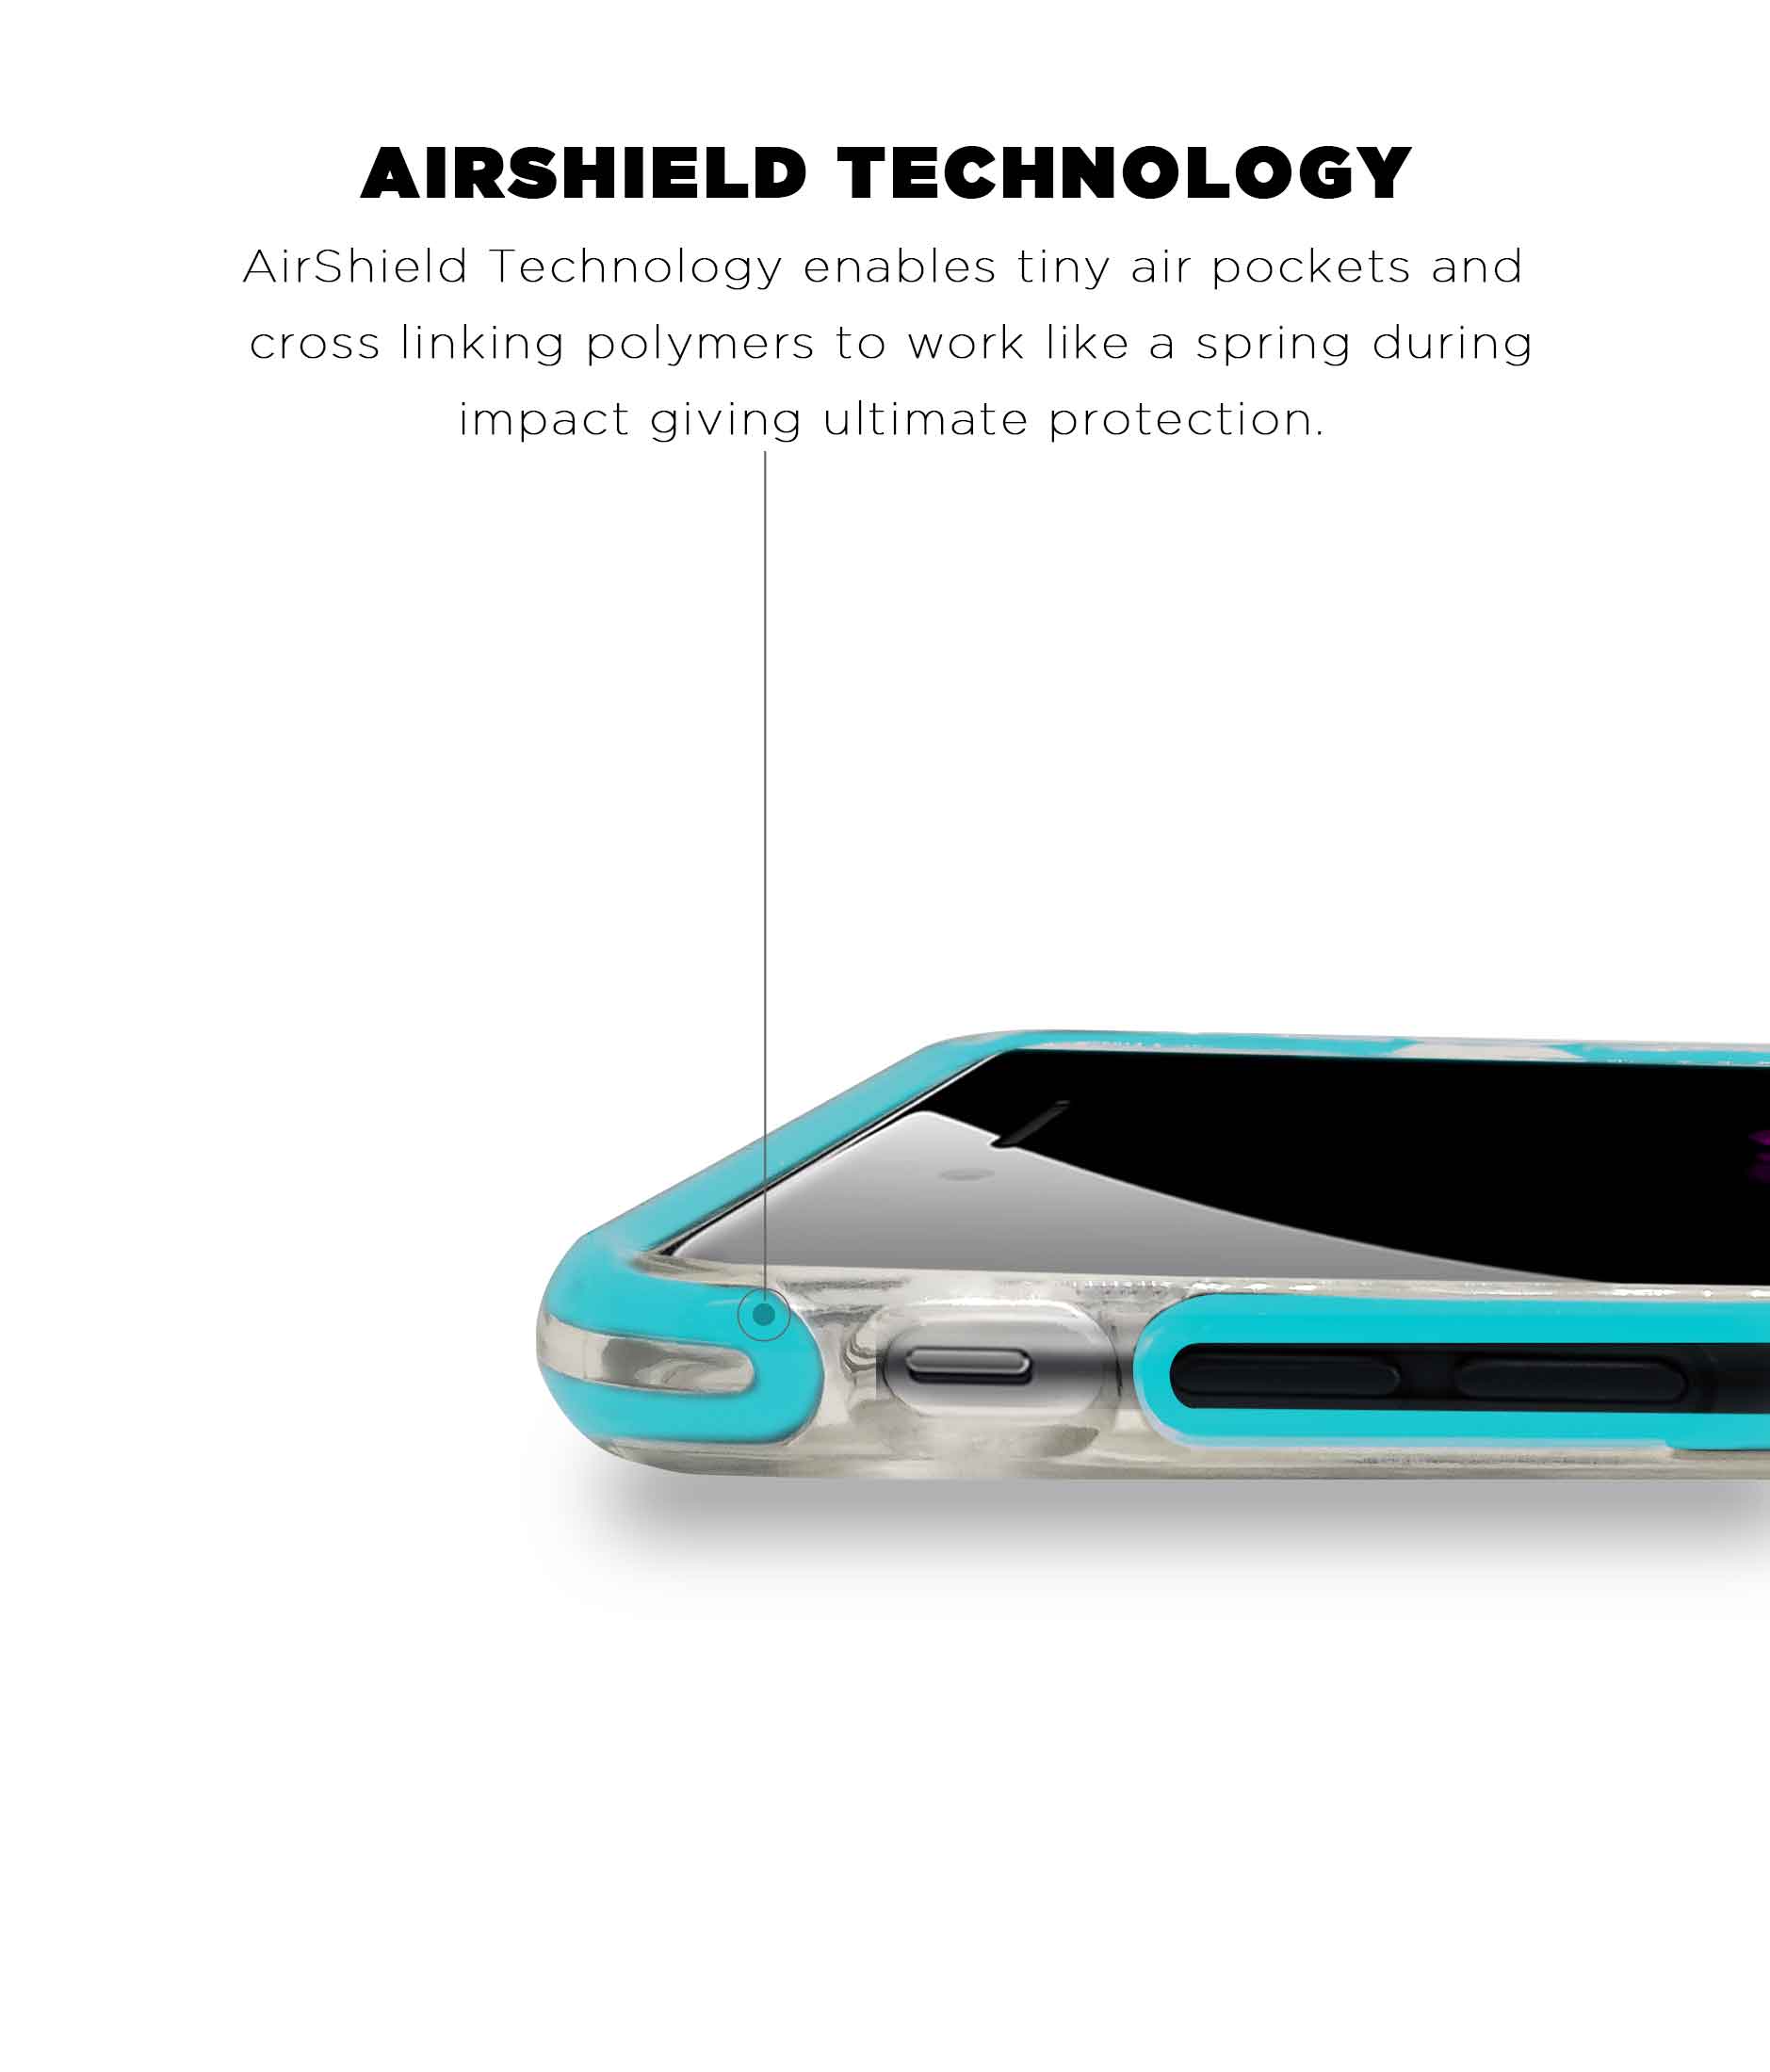 Illuminated Hulk - Extreme Phone Case for iPhone 7 Plus